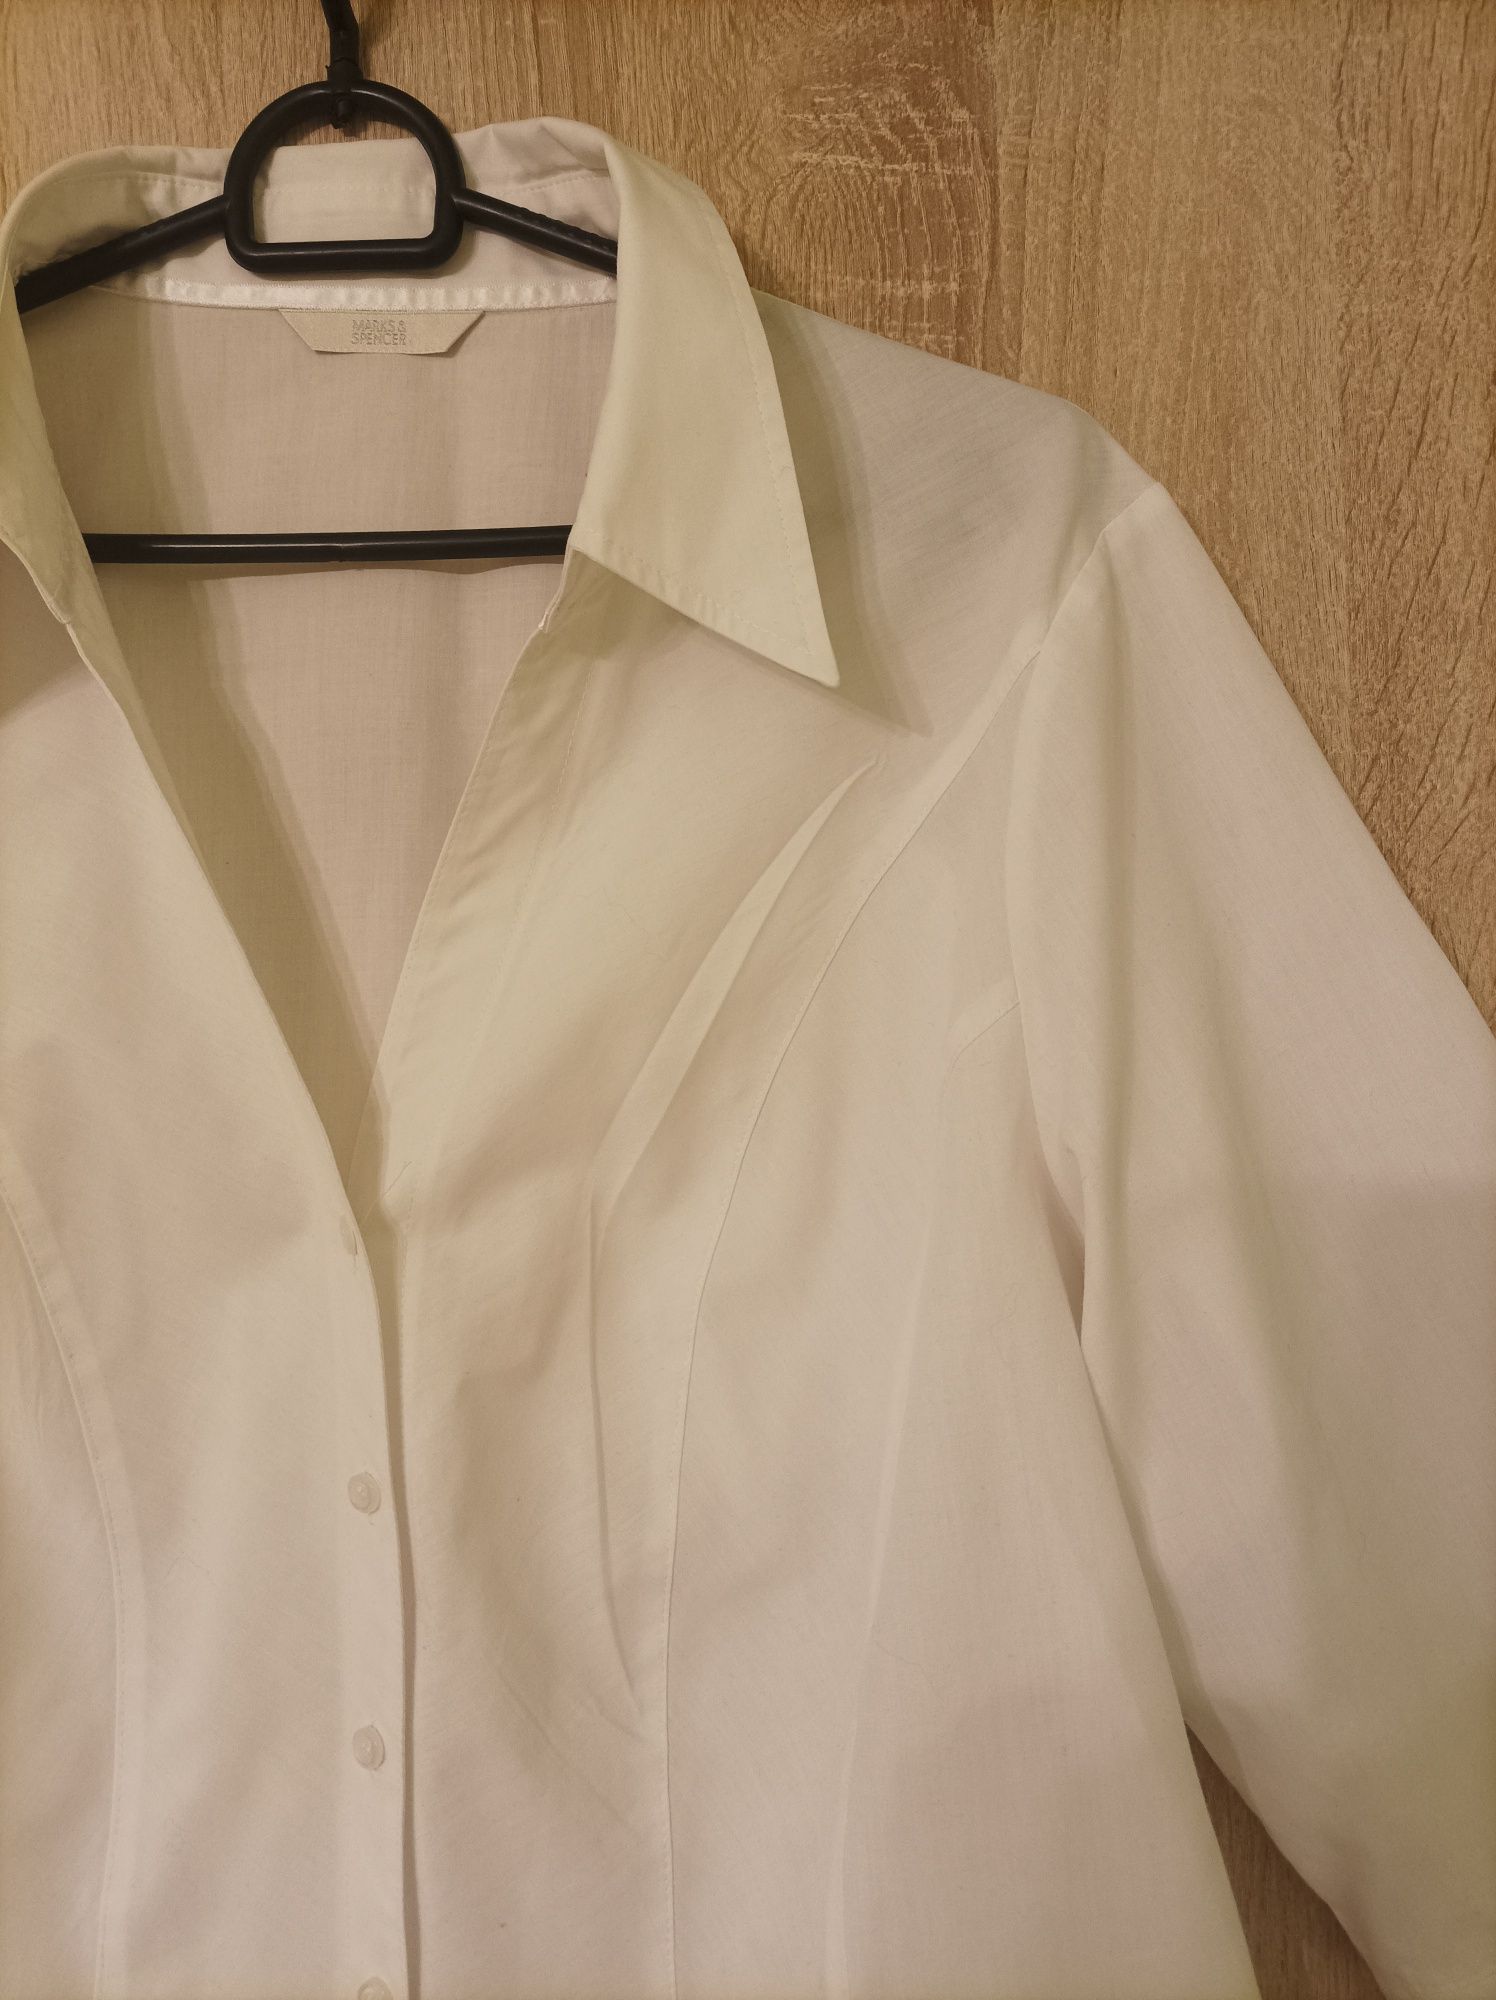 Biała koszula damska Marks & Spencer r. 44/XXL